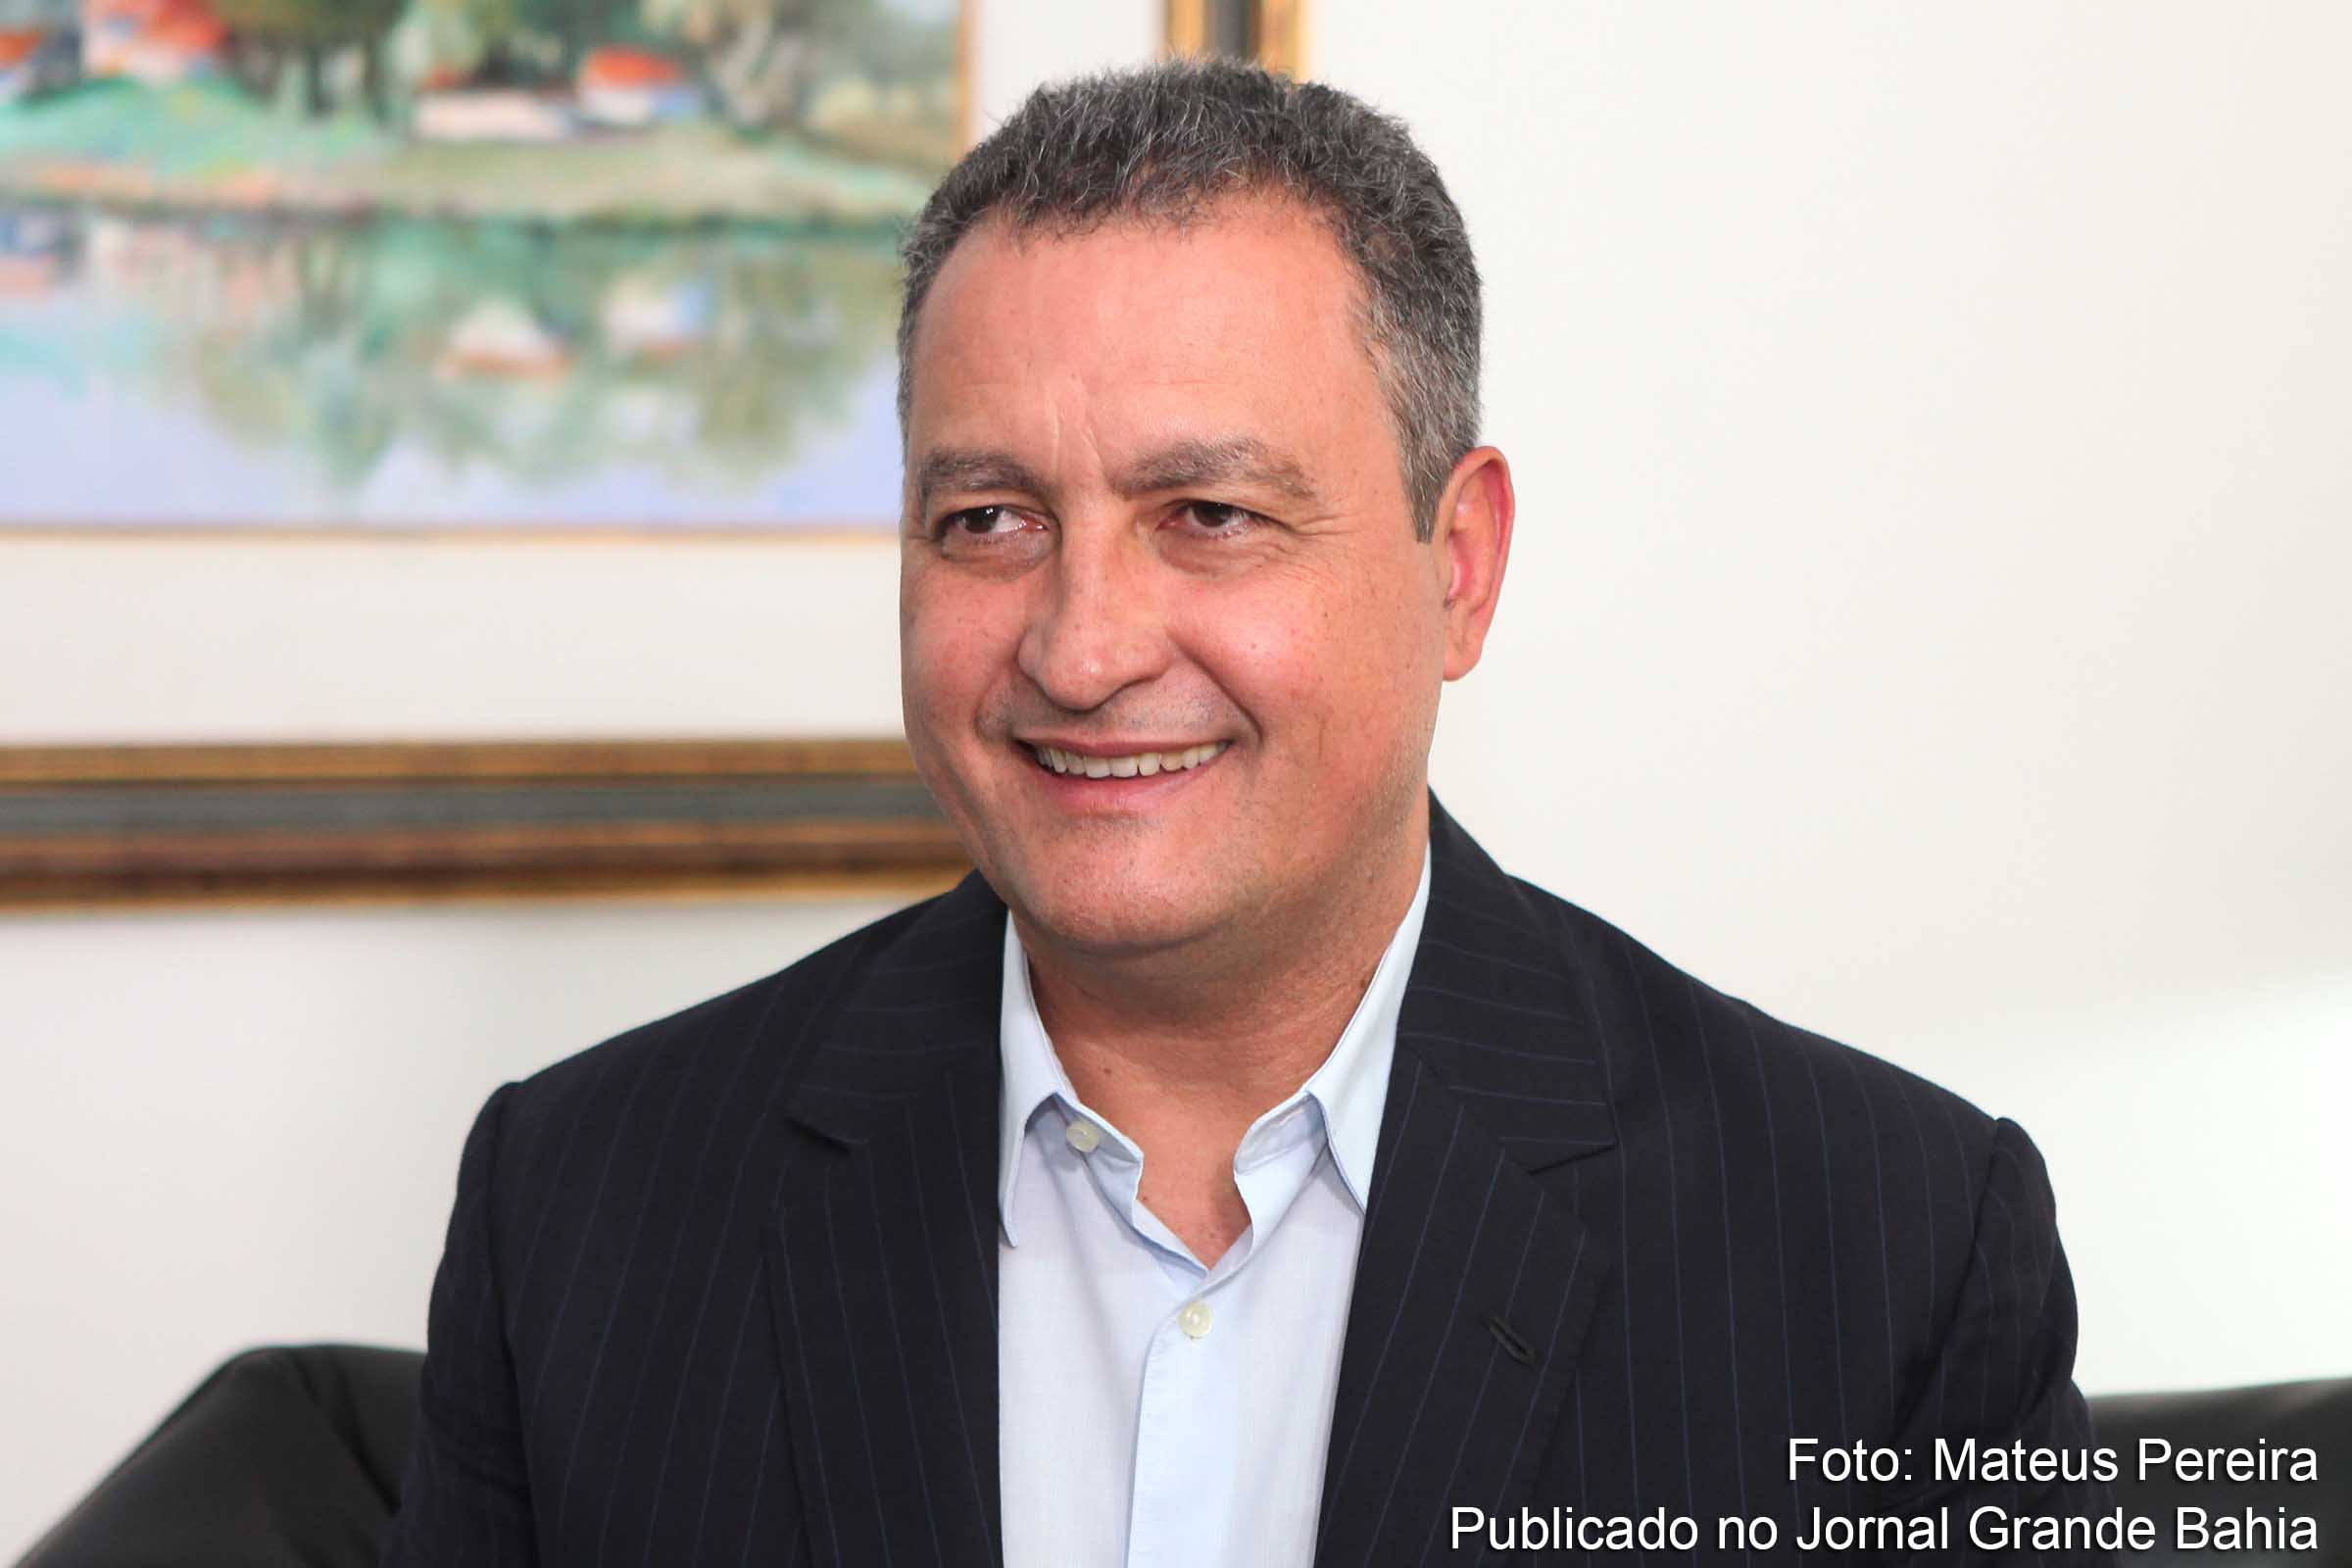 Governador Rui Costa parabenizou Marcelo Nilo por renunciar à disputa pela presidência da ALBA, em nome da unidade da base.